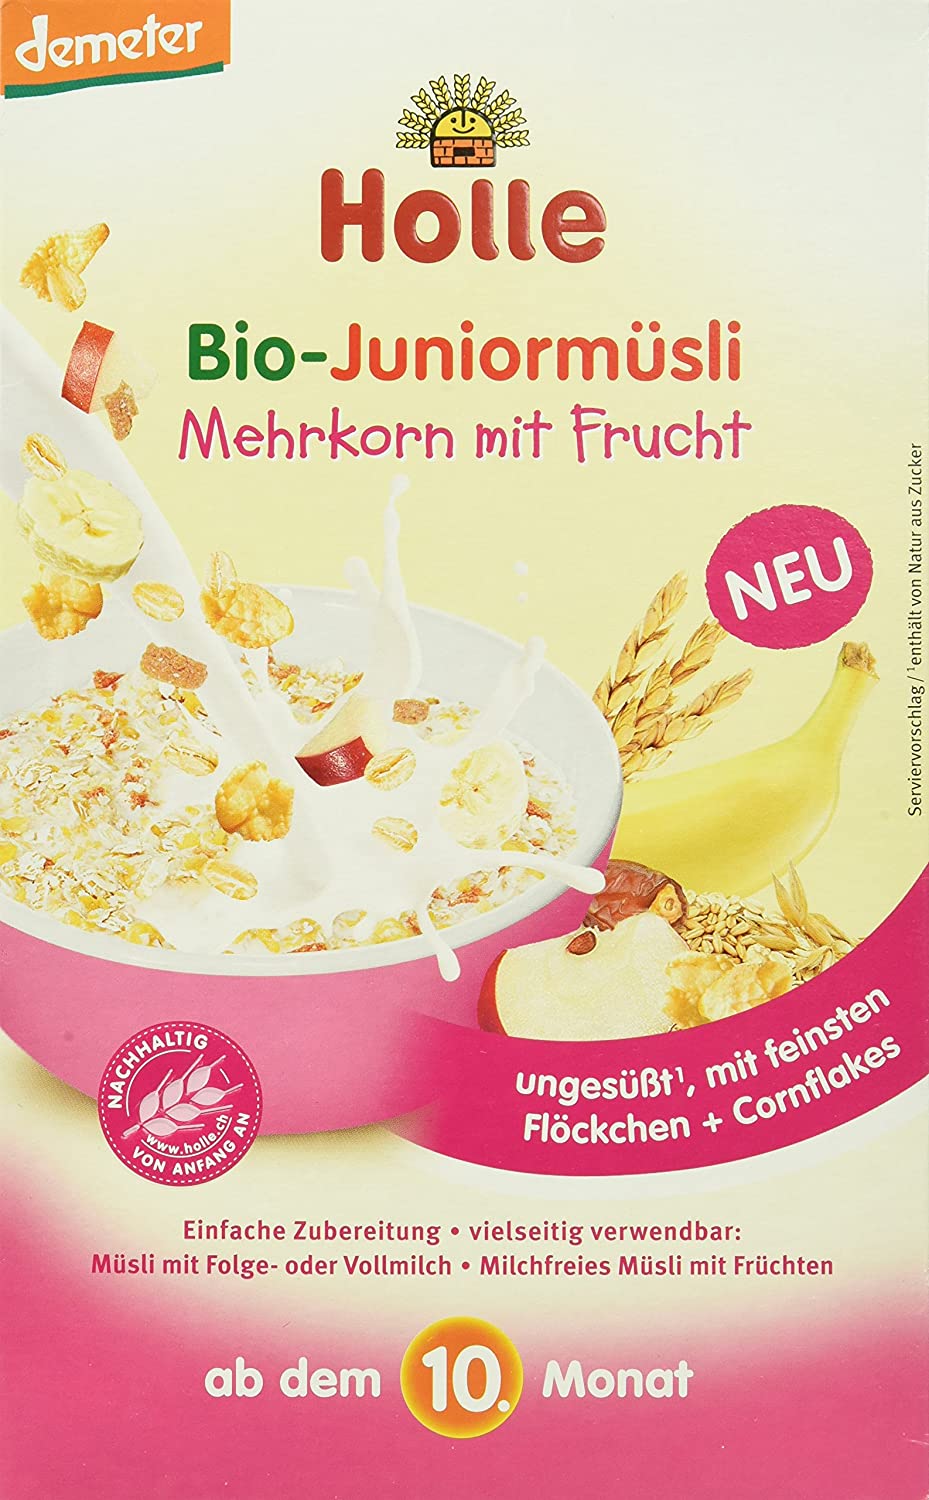 Holle Bio-Juniormüsli Mehrkorn mit Frucht, 4er Pack (4 x 250 g)